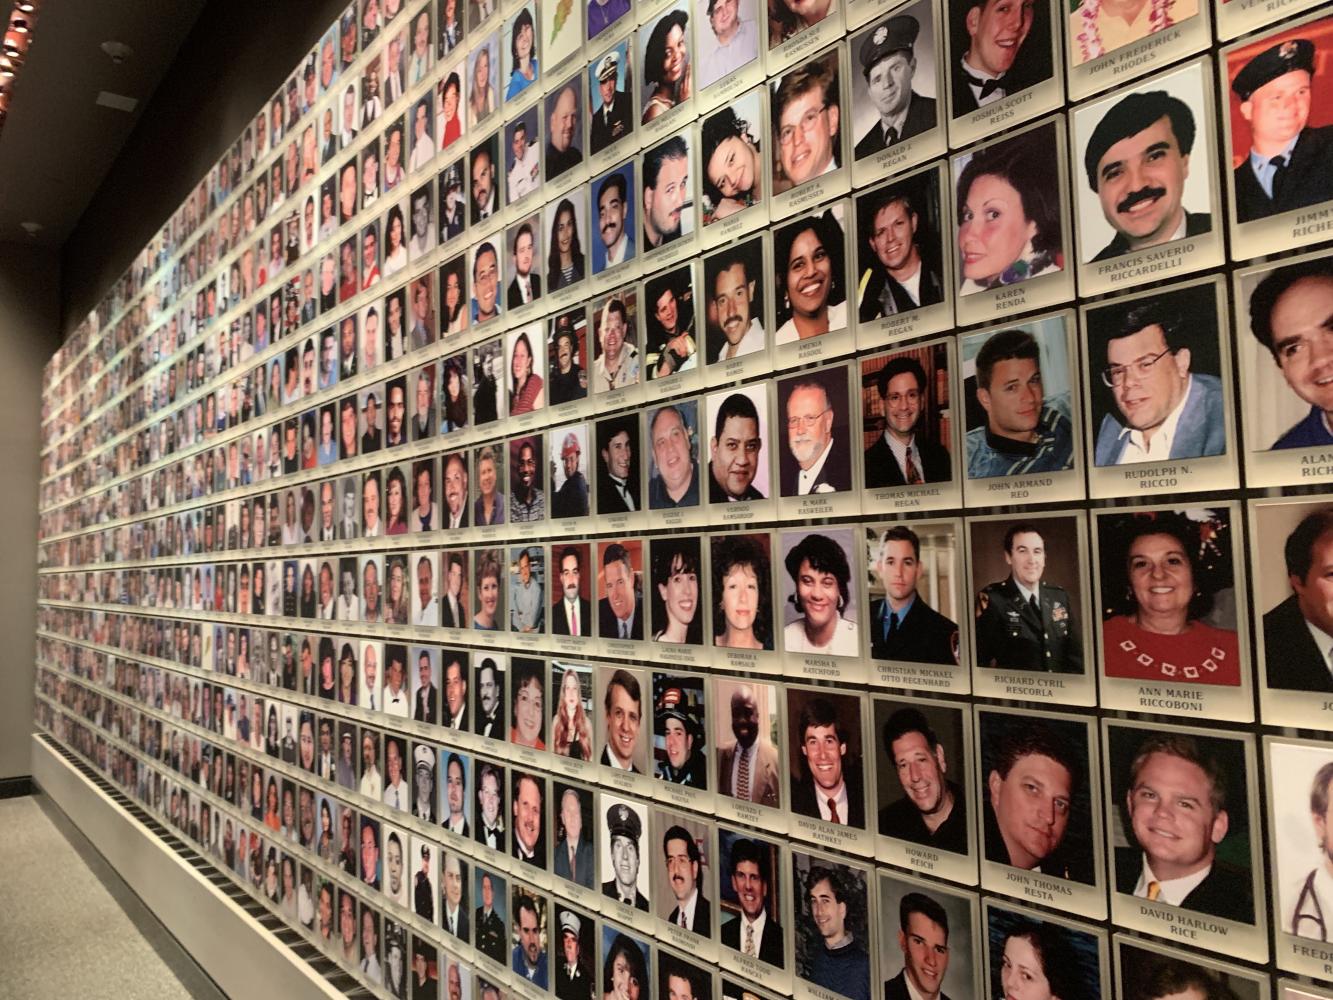 Fotos von Opfern der Anschläge des 11. September hängen im Gedenkraum des 9/11 Museums in New York